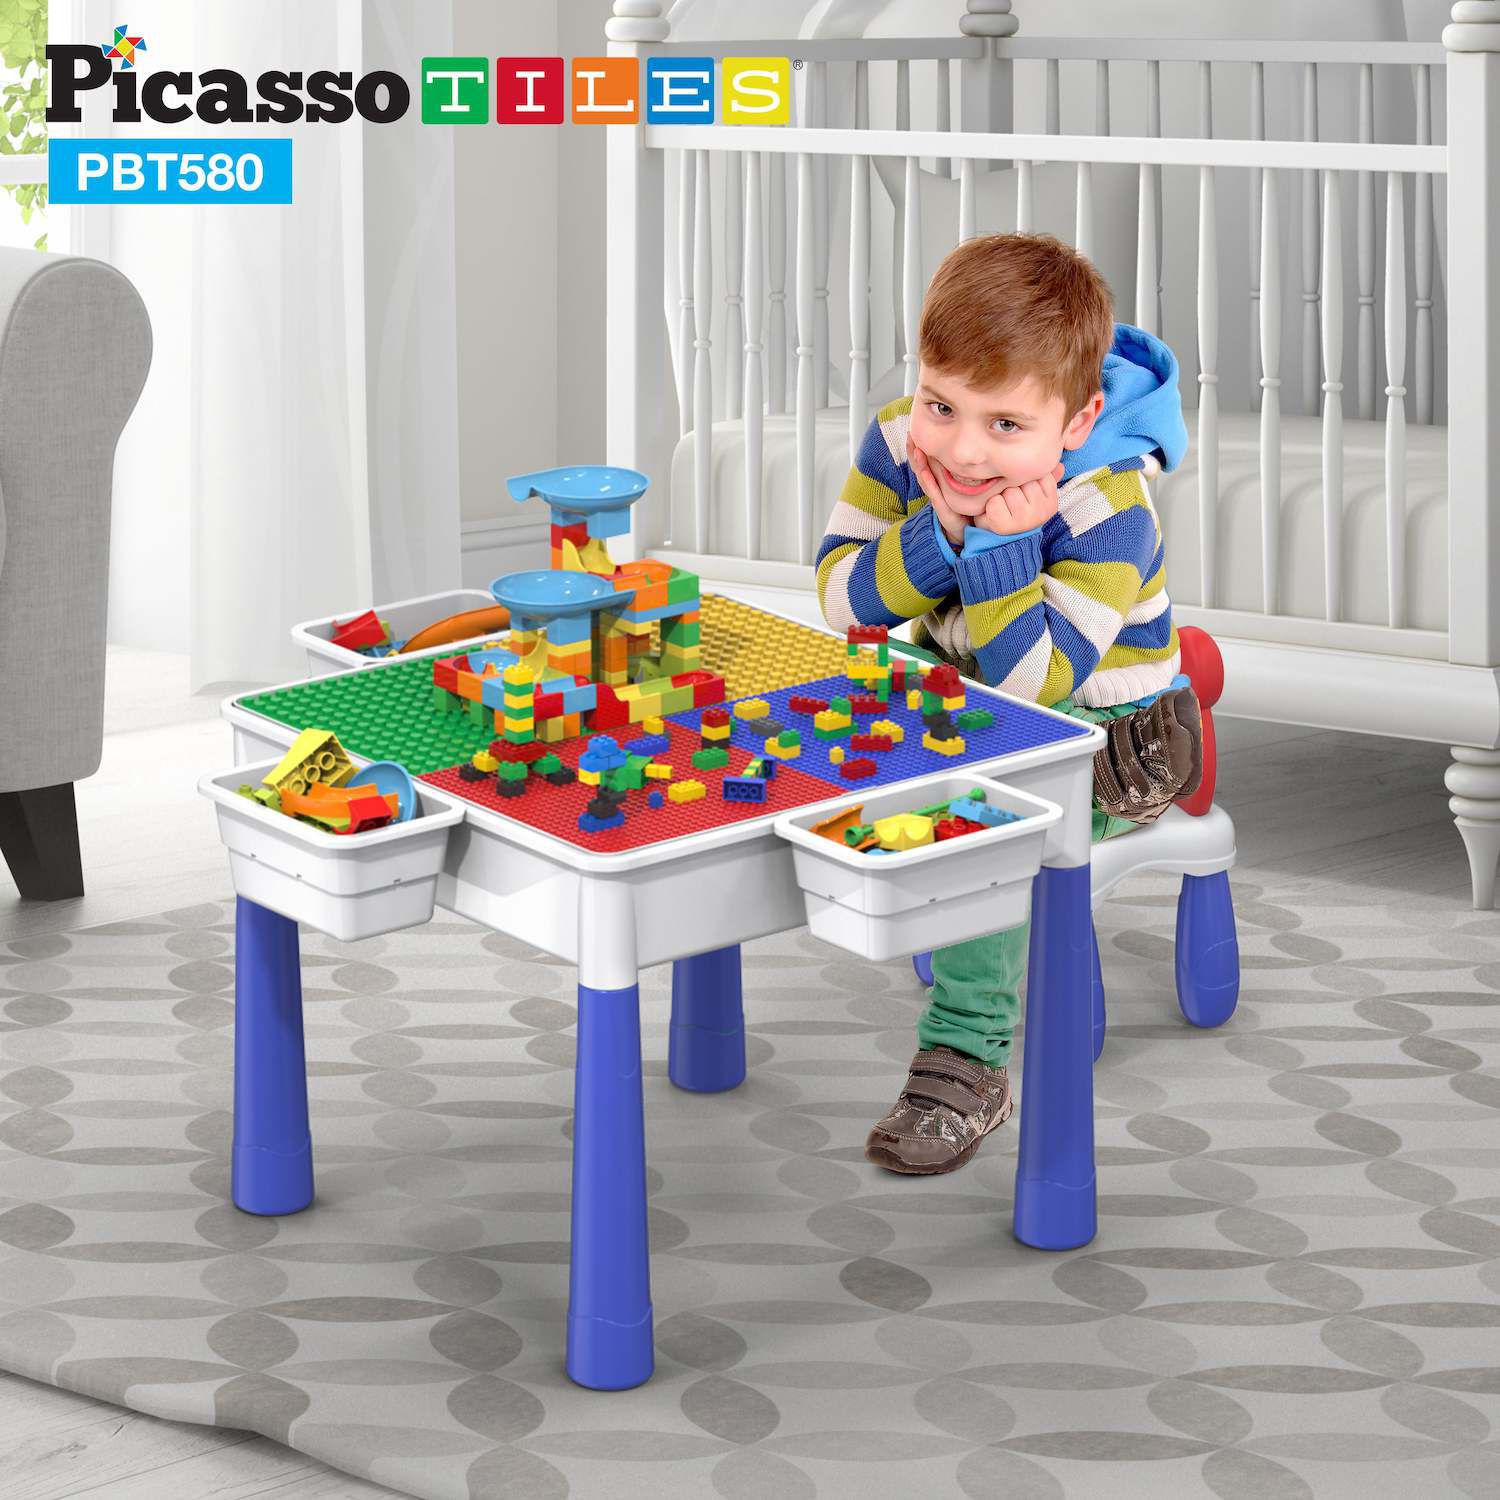 Набор столов и стульев для детского развлекательного центра Picassotiles